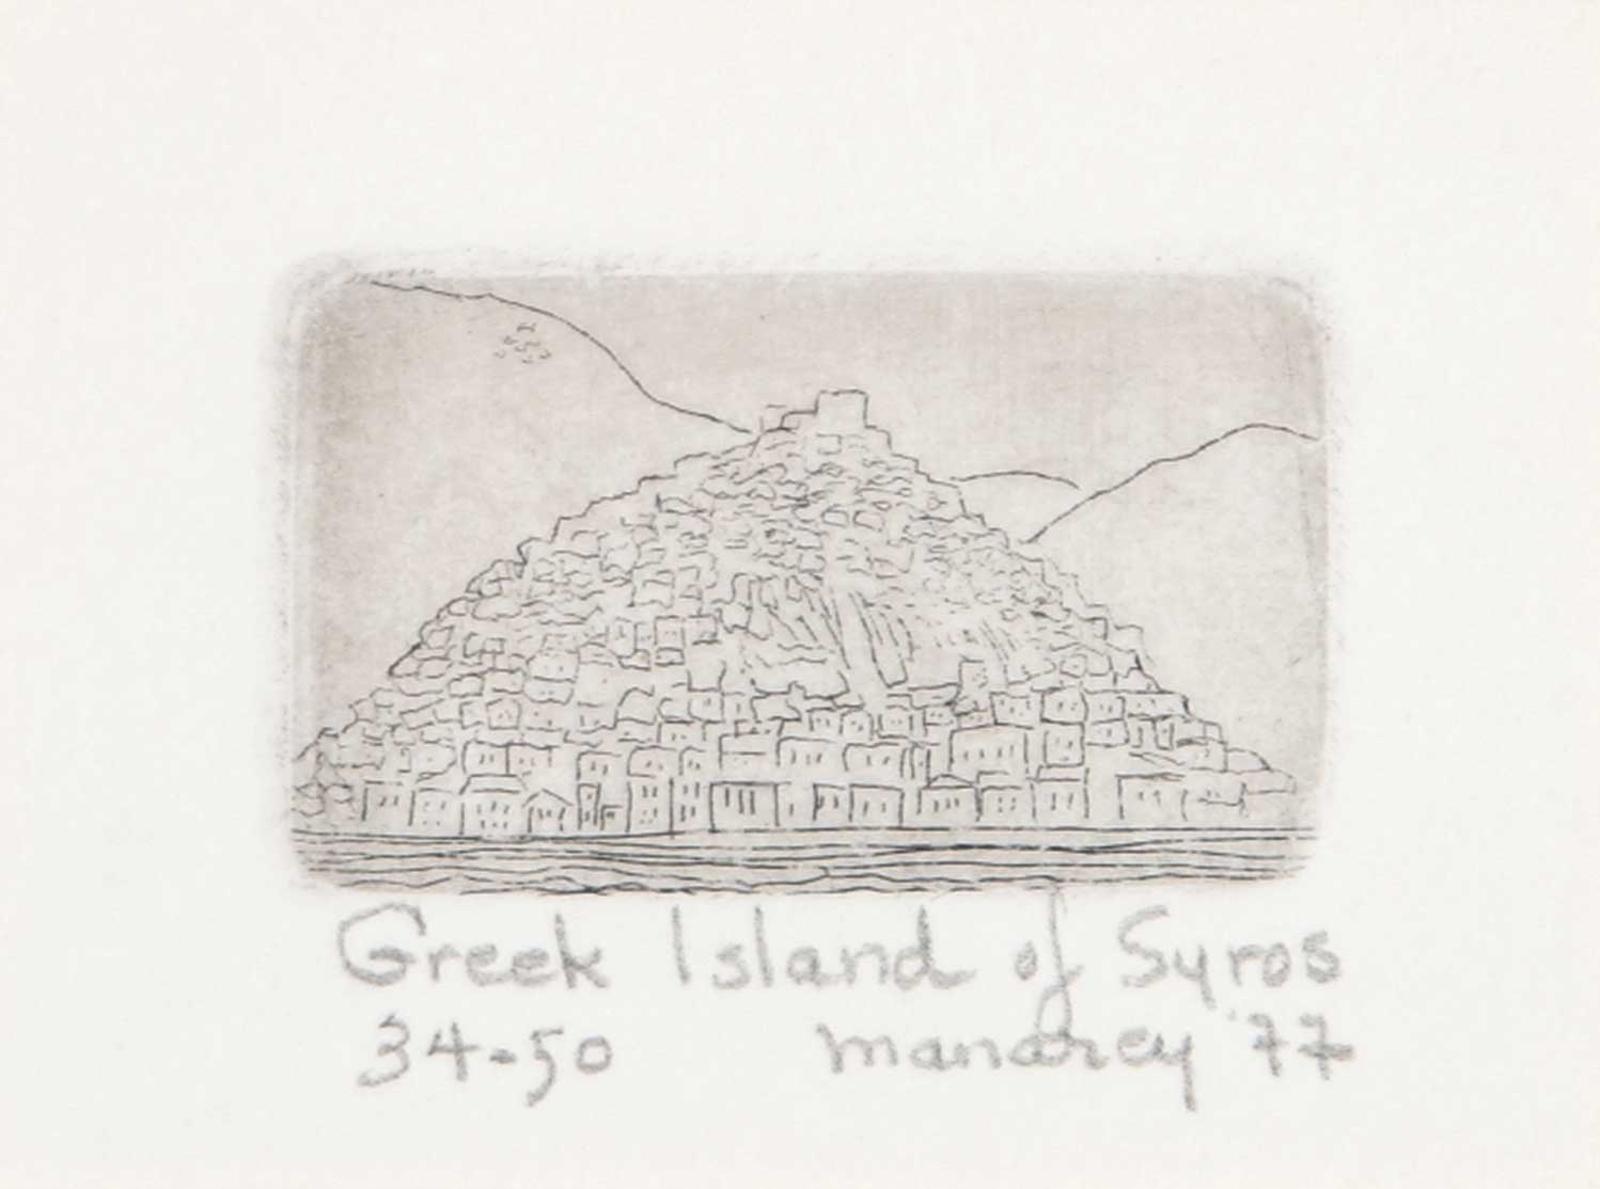 Thelma Alberta Manarey (1913-1984) - Greek Island of Syros  #34/50